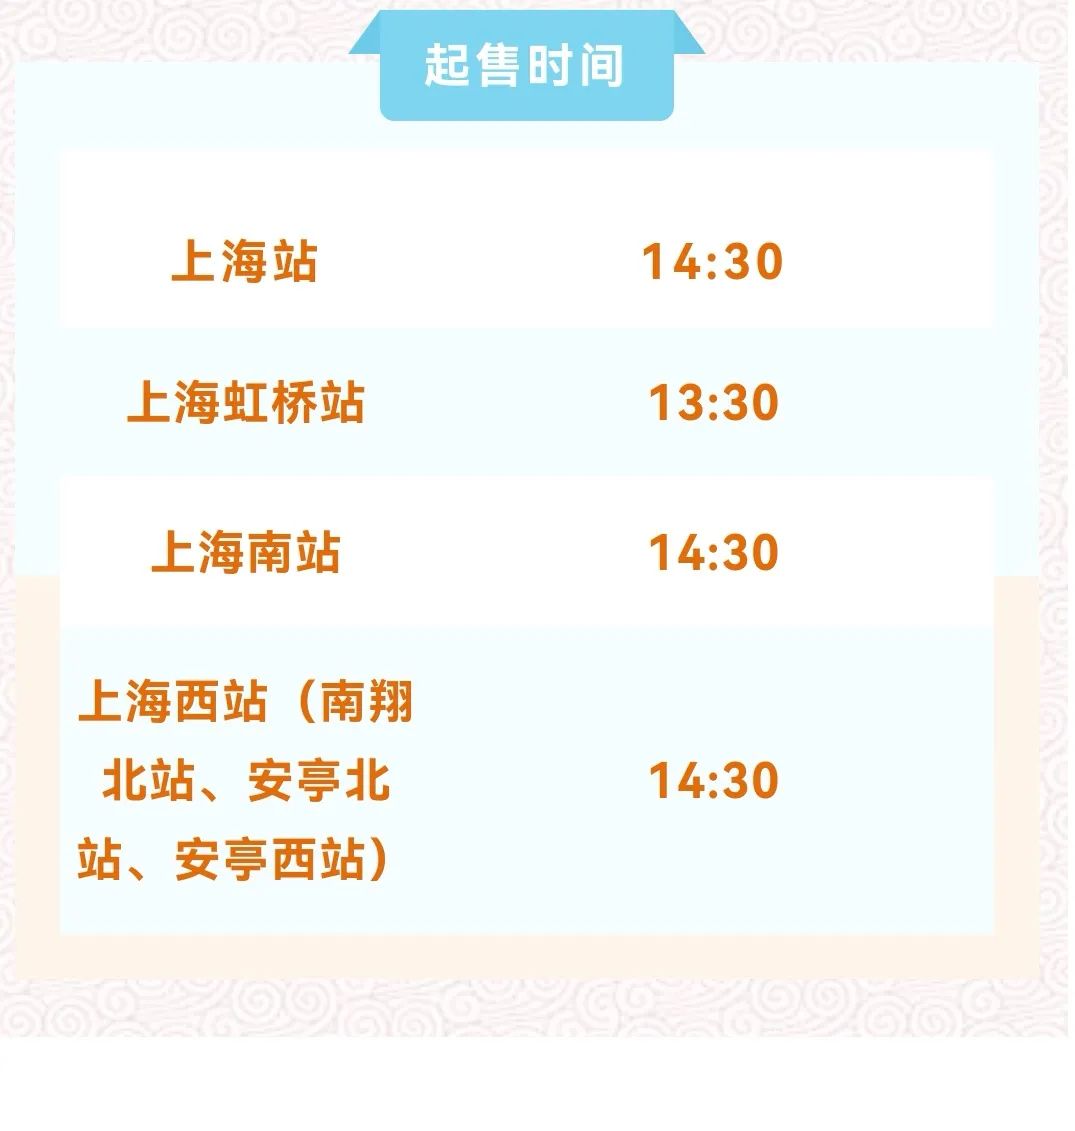 上海站提醒广大旅客,不仅要算好日期去购买春运车票,还要注意各火车站